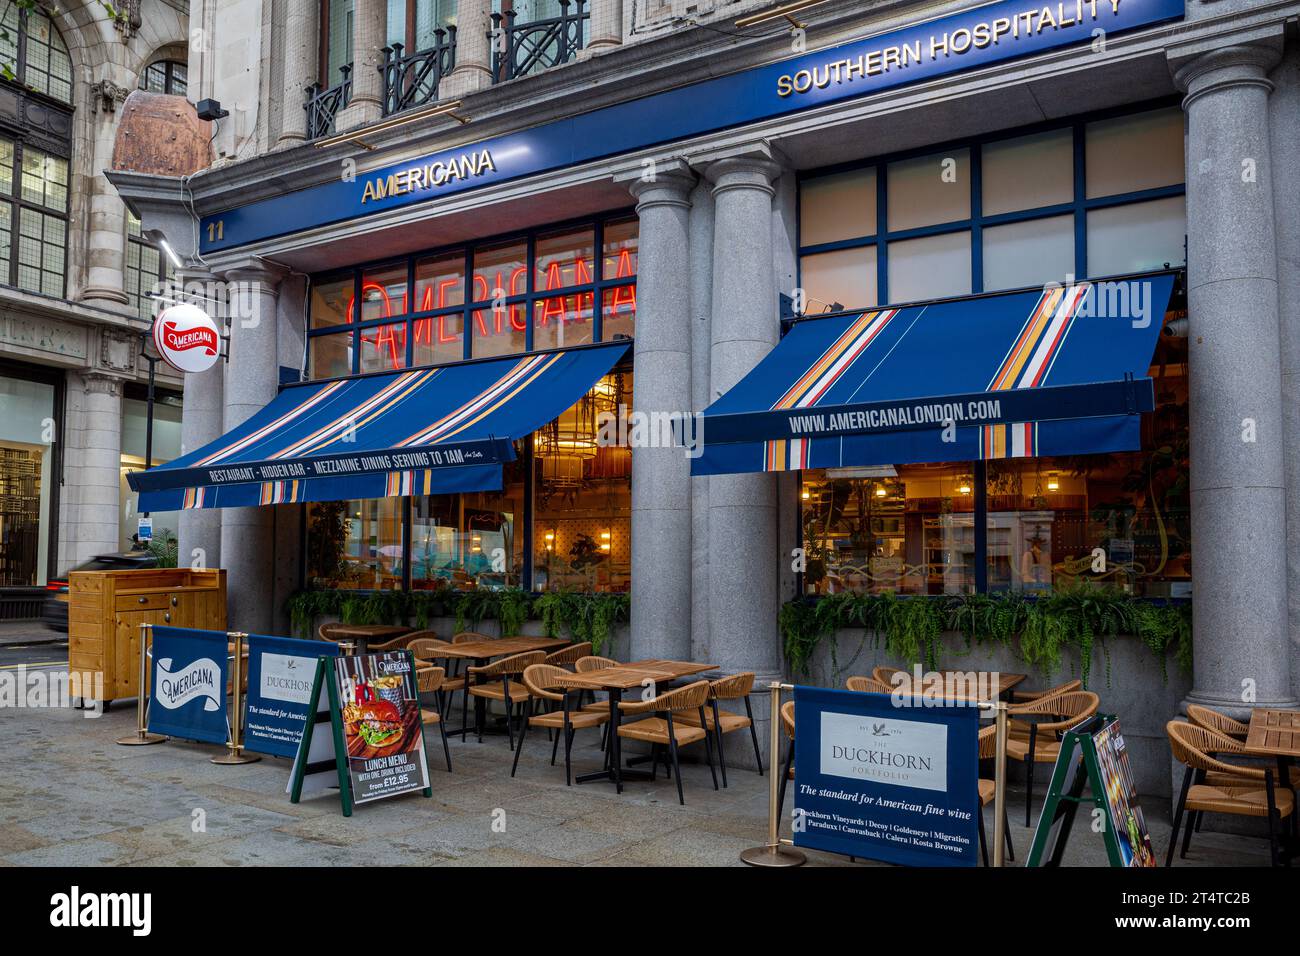 Americana Restaurant London. Das Americana Restaurant im 11 Haymarket, London, Südstaaten-Gastfreundschaft & Soul Food im Herzen von London. Gegründet 2023. Stockfoto